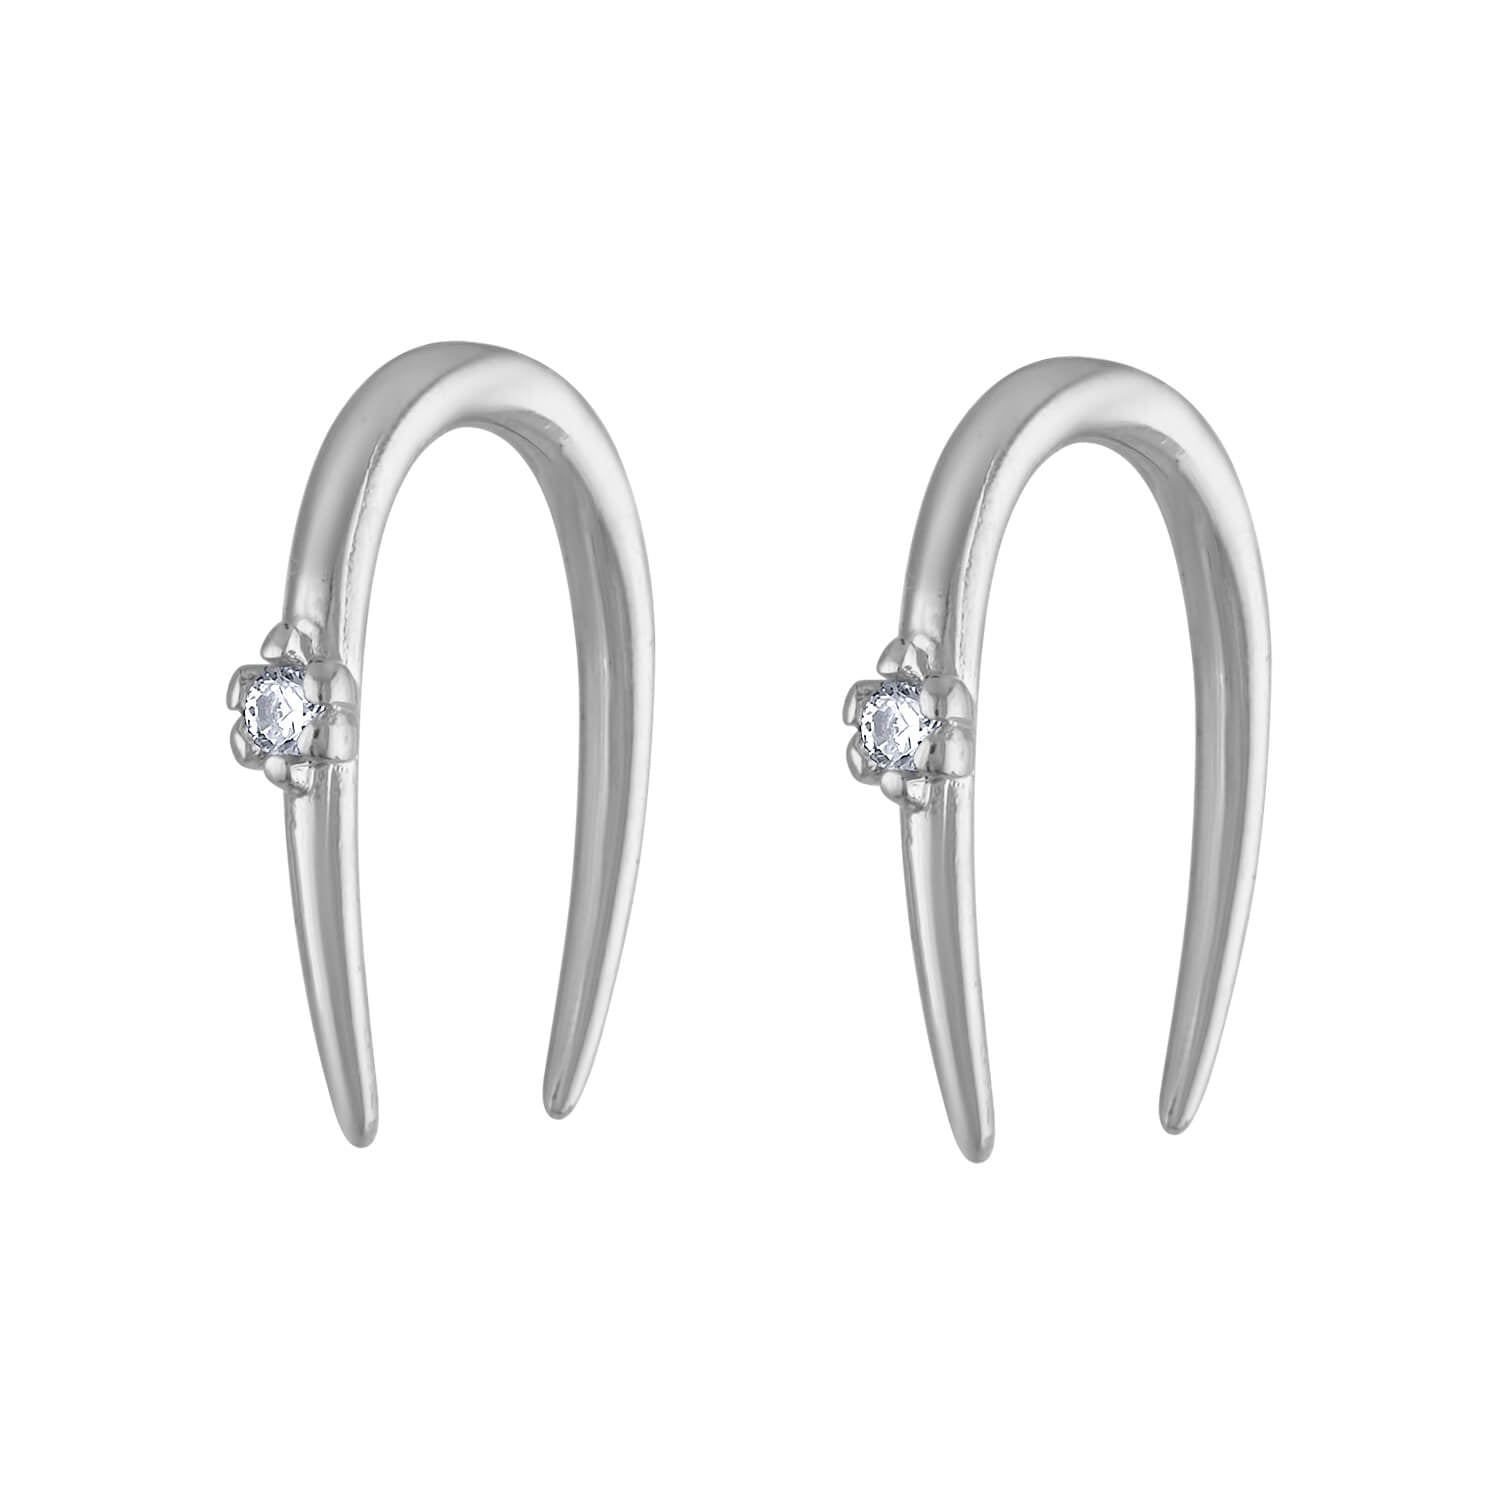 Stainless Steel Hoop Earrings, High Quality Luxury Hoops